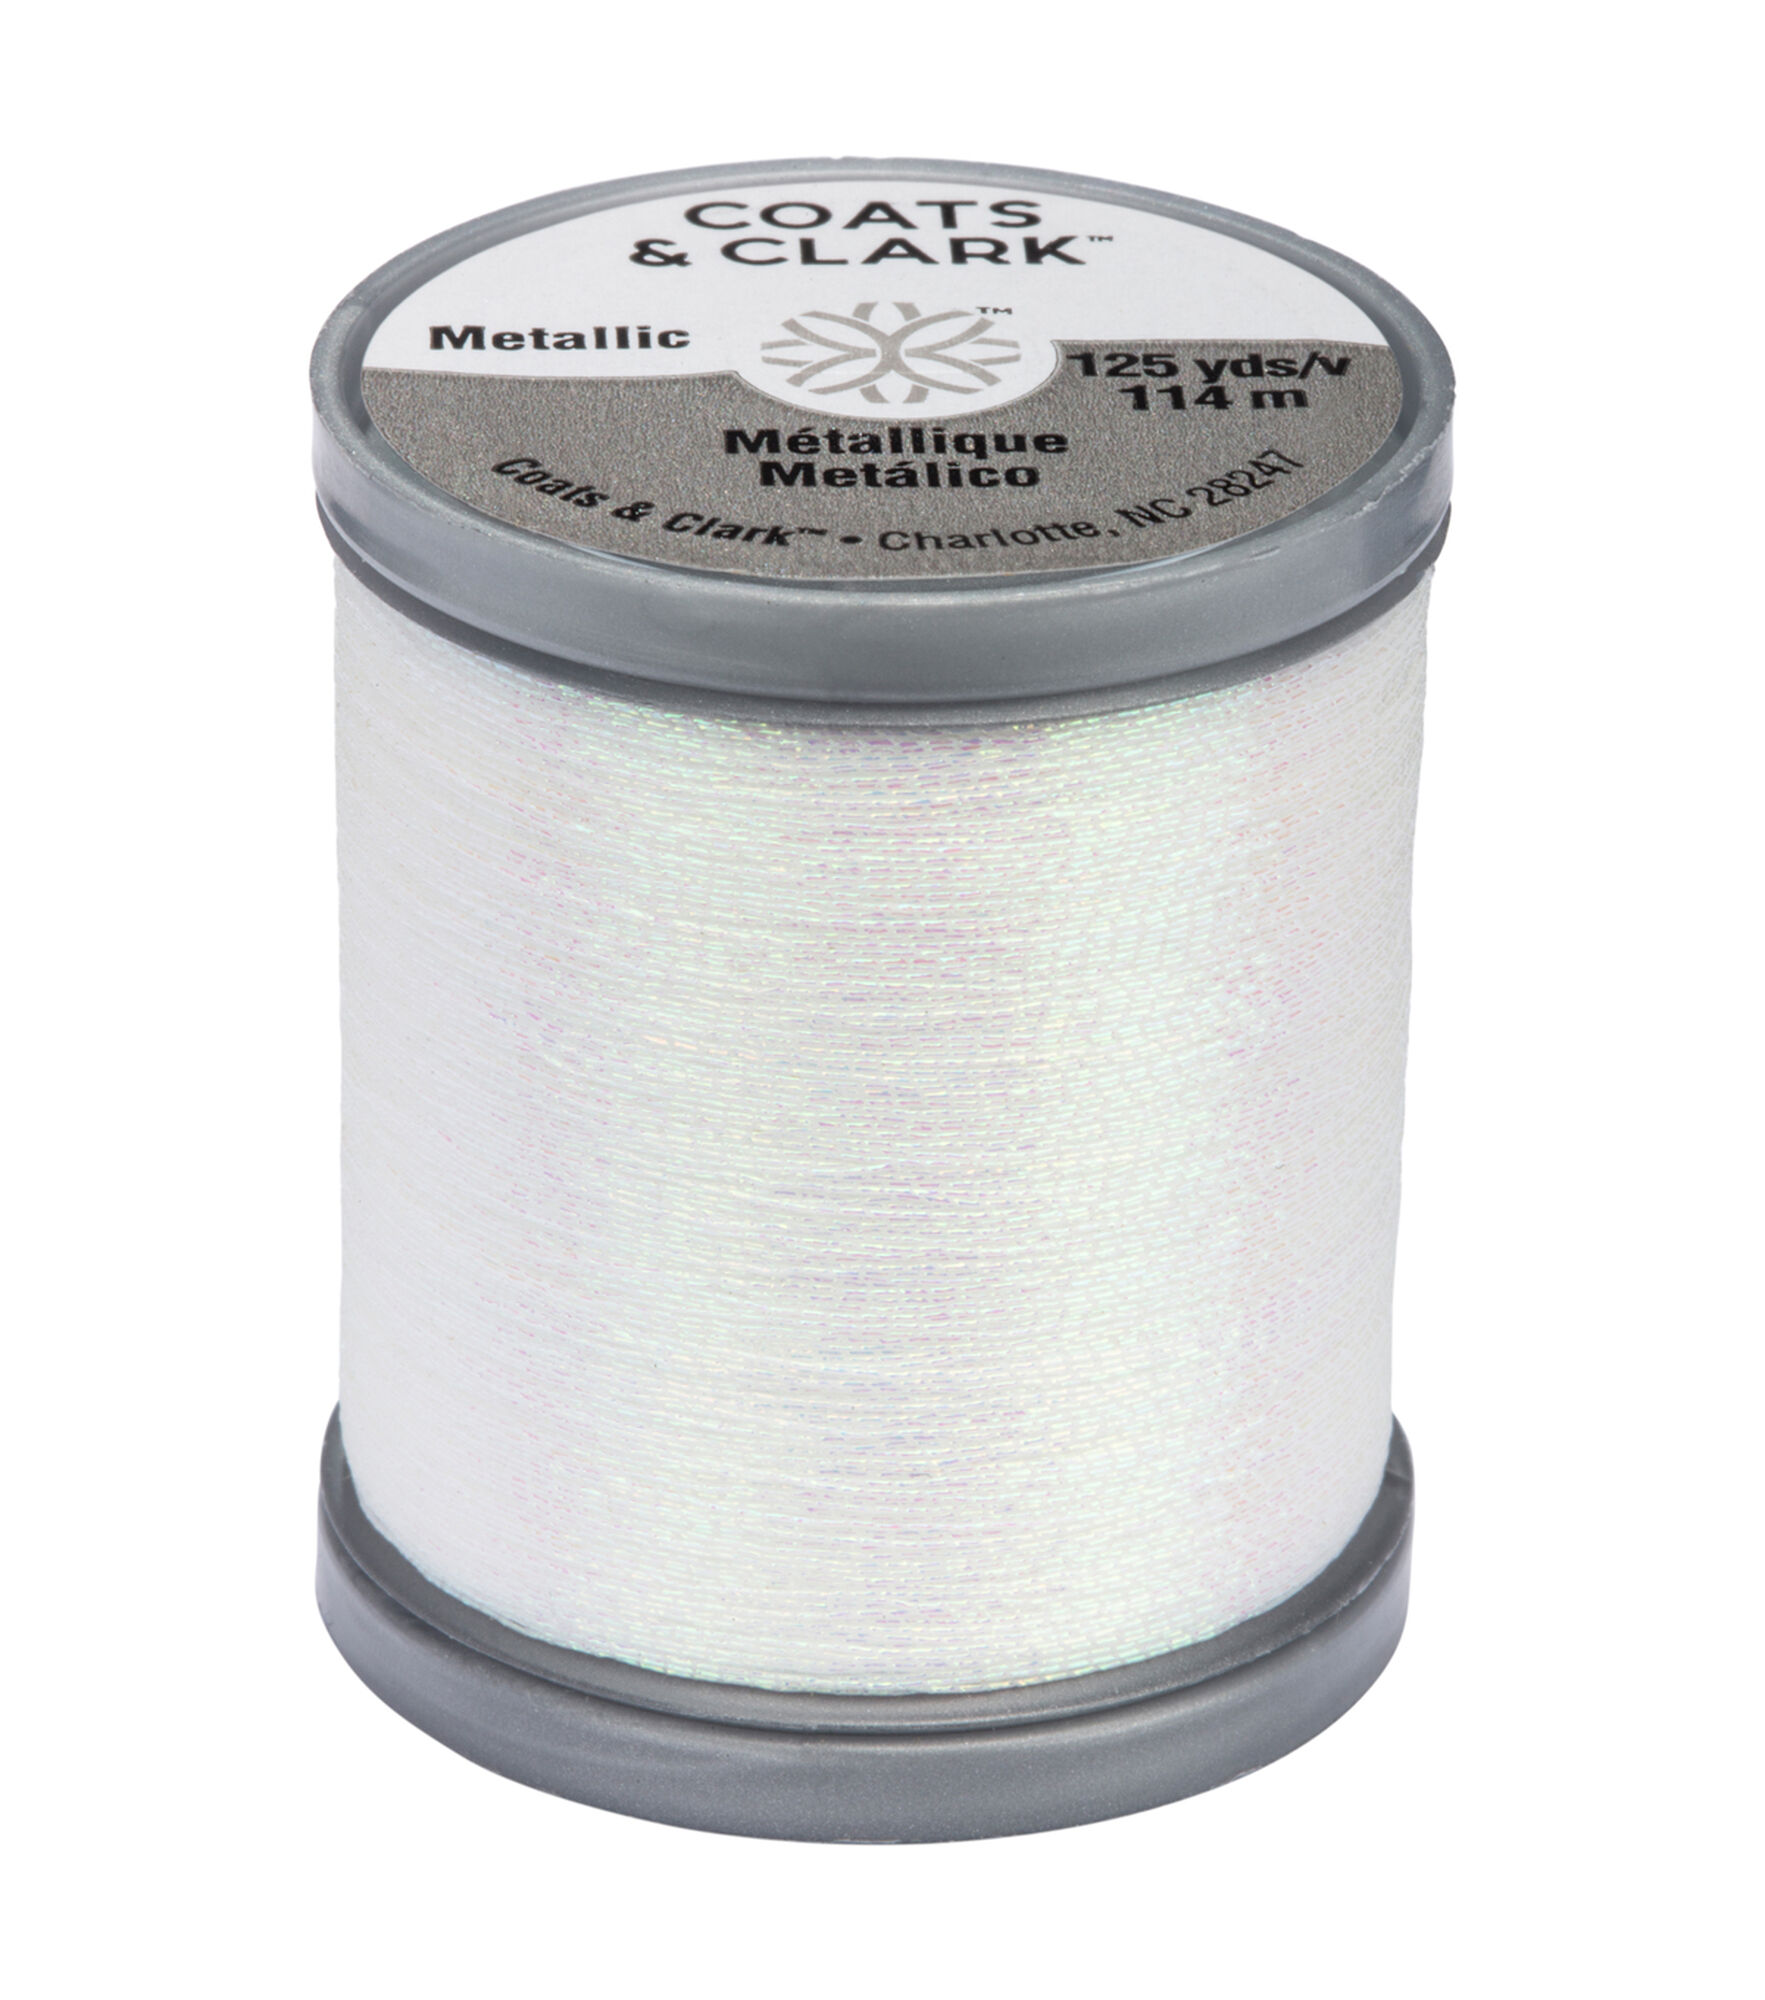 Coats & Clark Metallic Thread-125yds Coats & Clark Metallic Thread